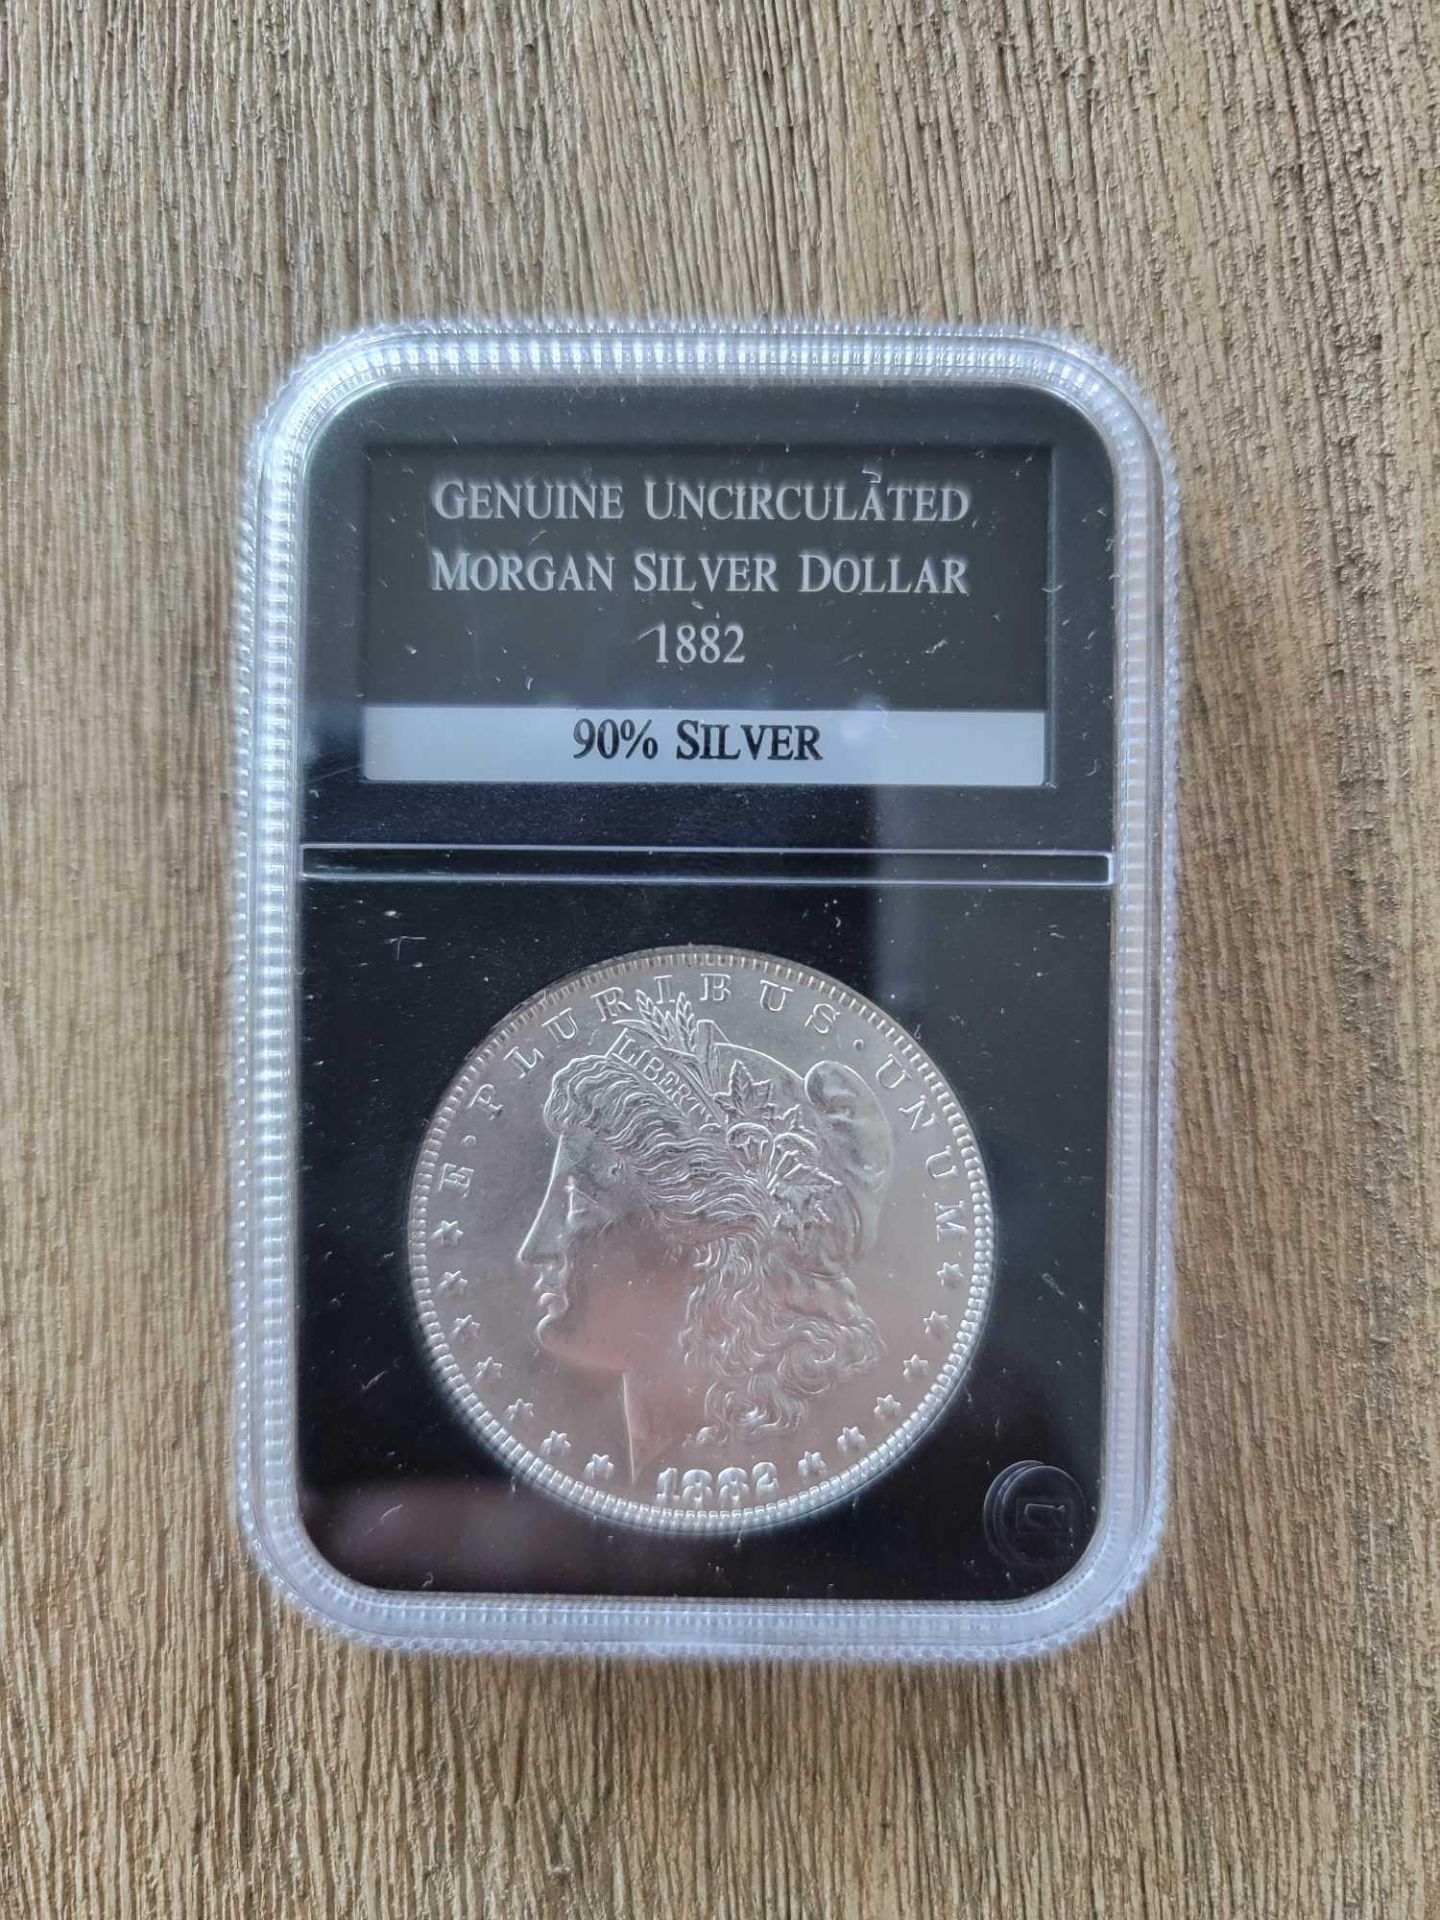 1882 Genuine Uncirculated Condition Morgan Dollar - Image 2 of 4